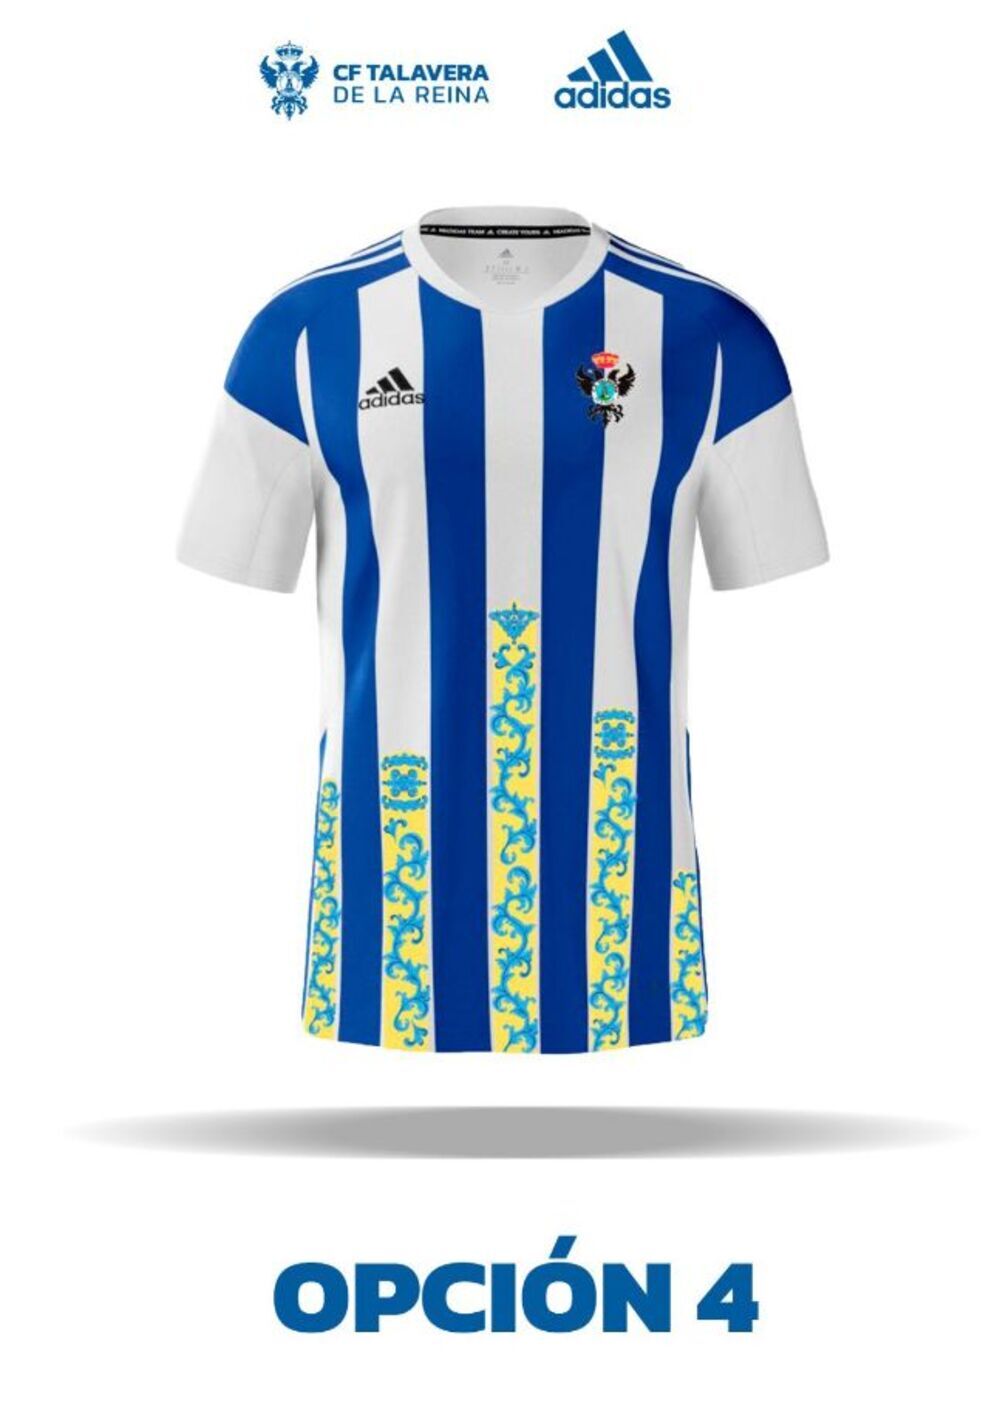 Los socios del CF Talavera elegirán la nueva camiseta